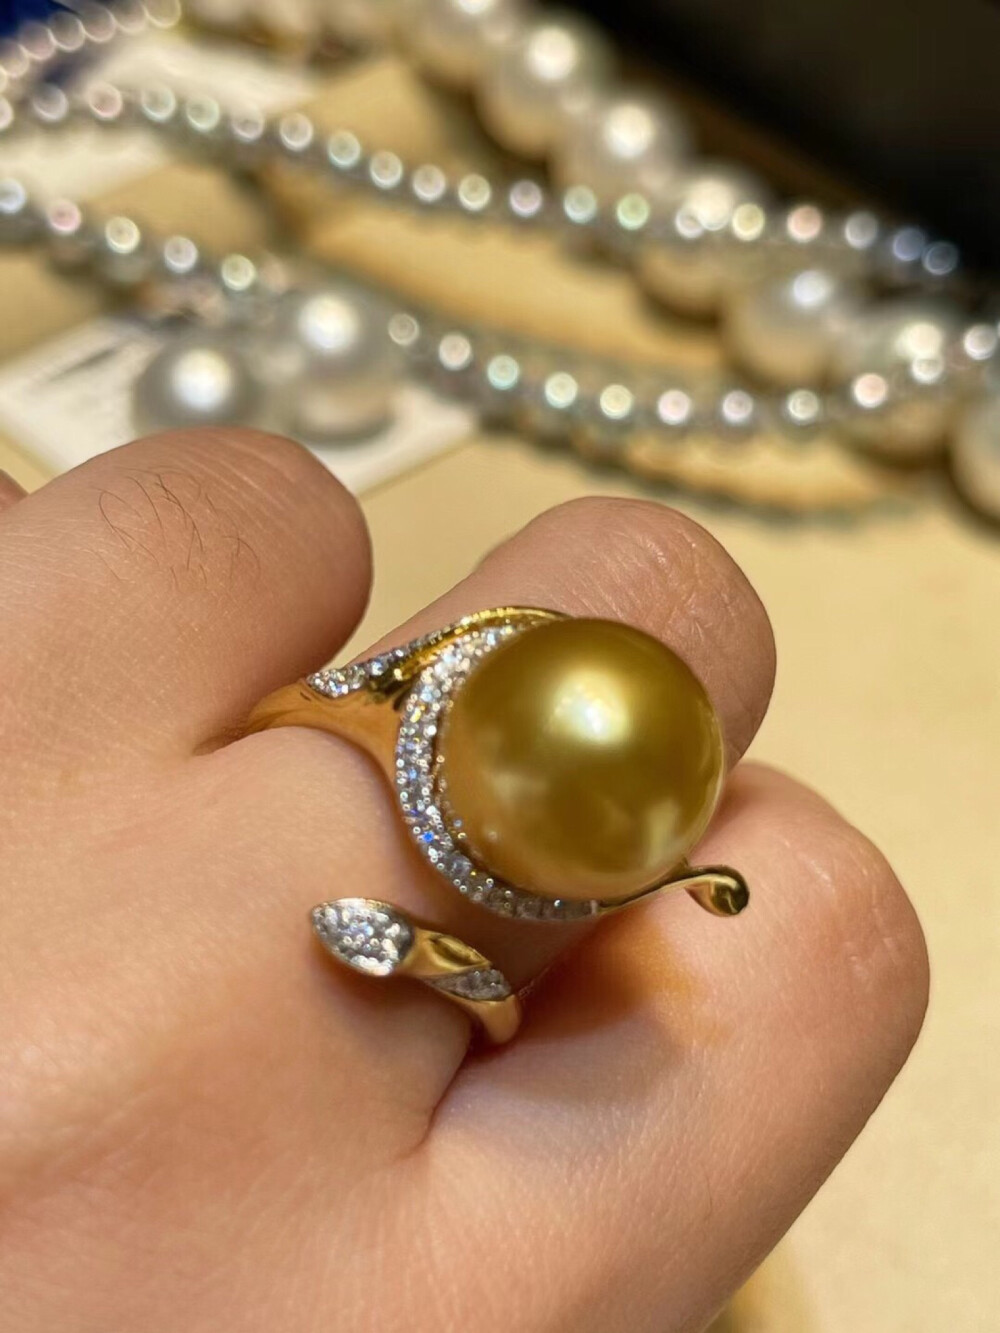 浓金马蹄莲珍珠戒指 完美无瑕
13MM 天然正圆浓金 18K钻石